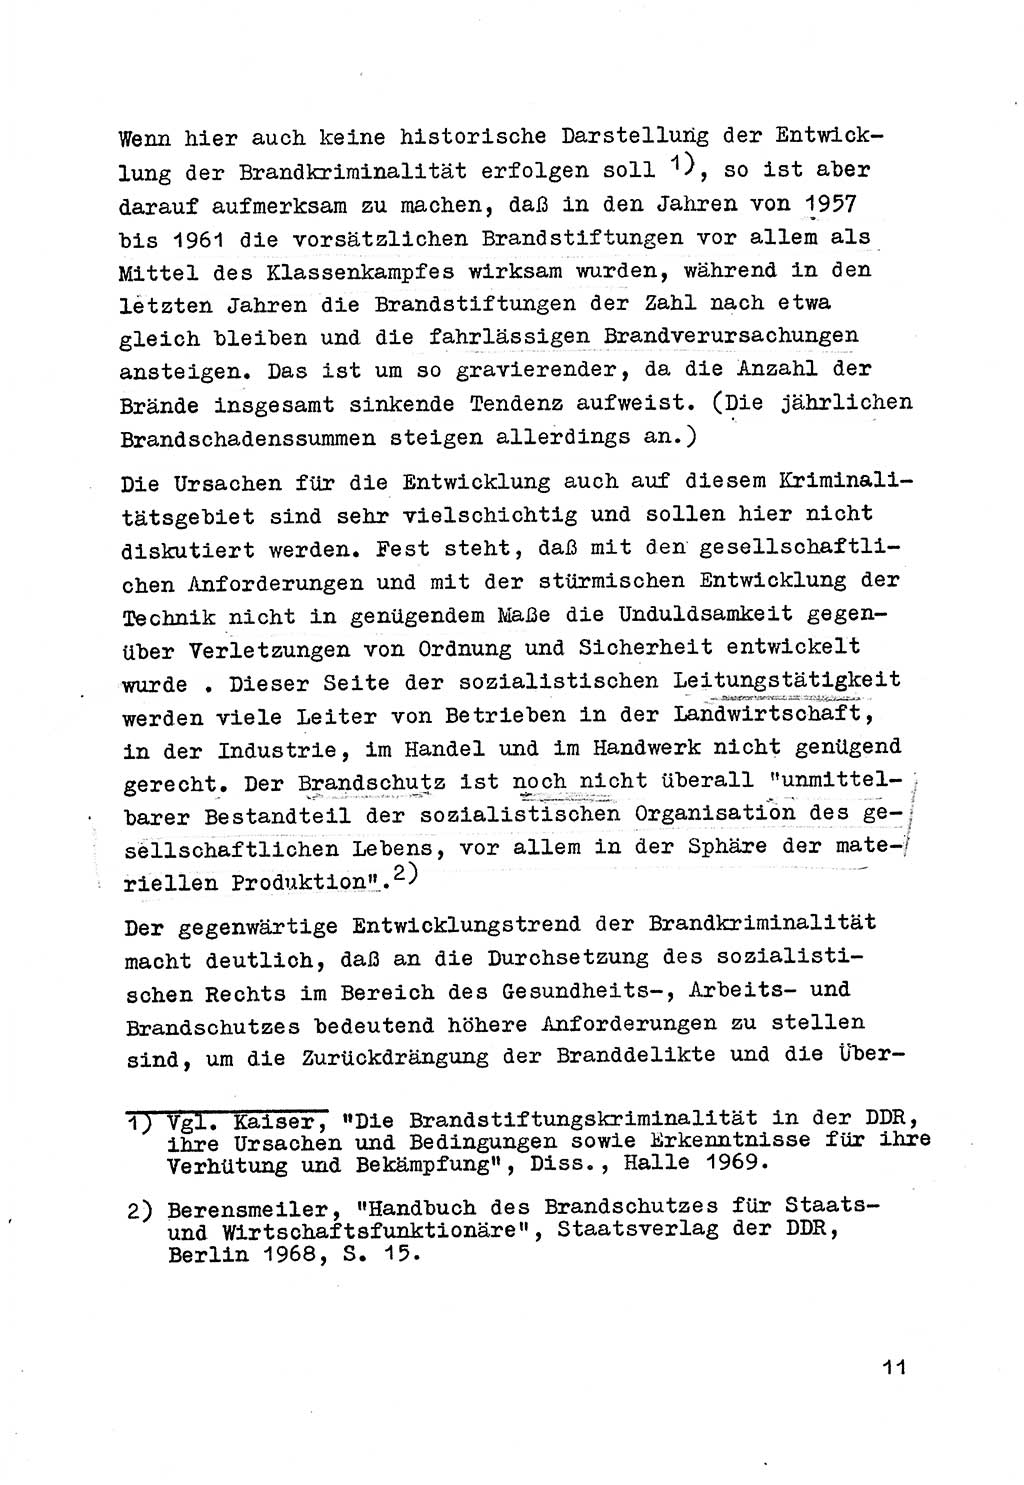 Strafrecht der DDR (Deutsche Demokratische Republik), Besonderer Teil, Lehrmaterial, Heft 7 1970, Seite 11 (Strafr. DDR BT Lehrmat. H. 7 1970, S. 11)